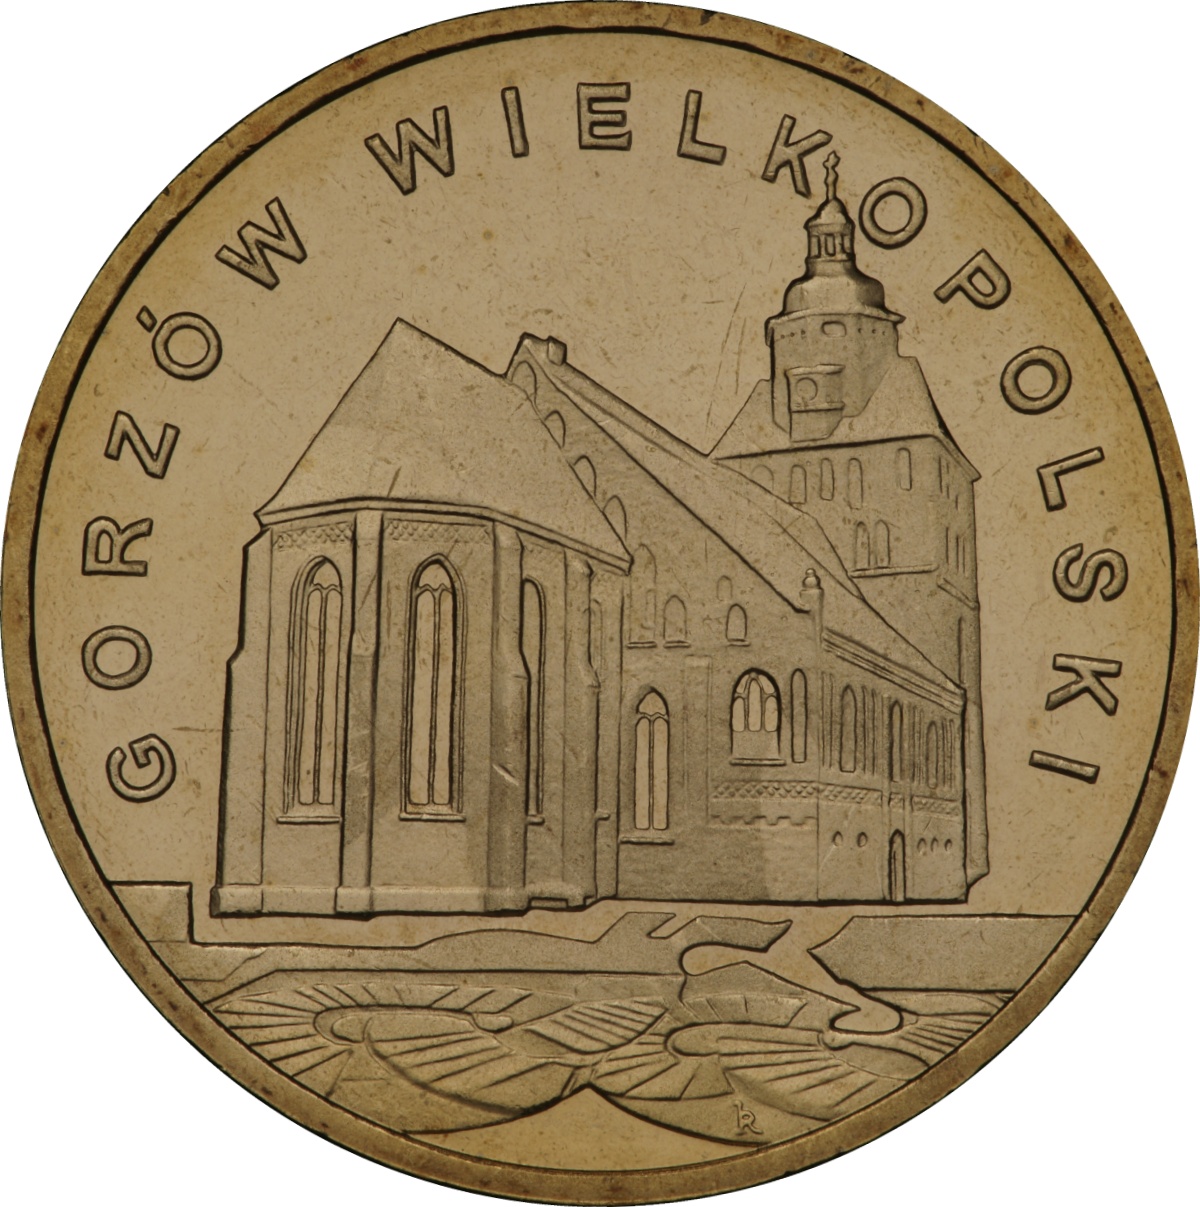 2zl-gorzow-wielkopolski-rewers-monety